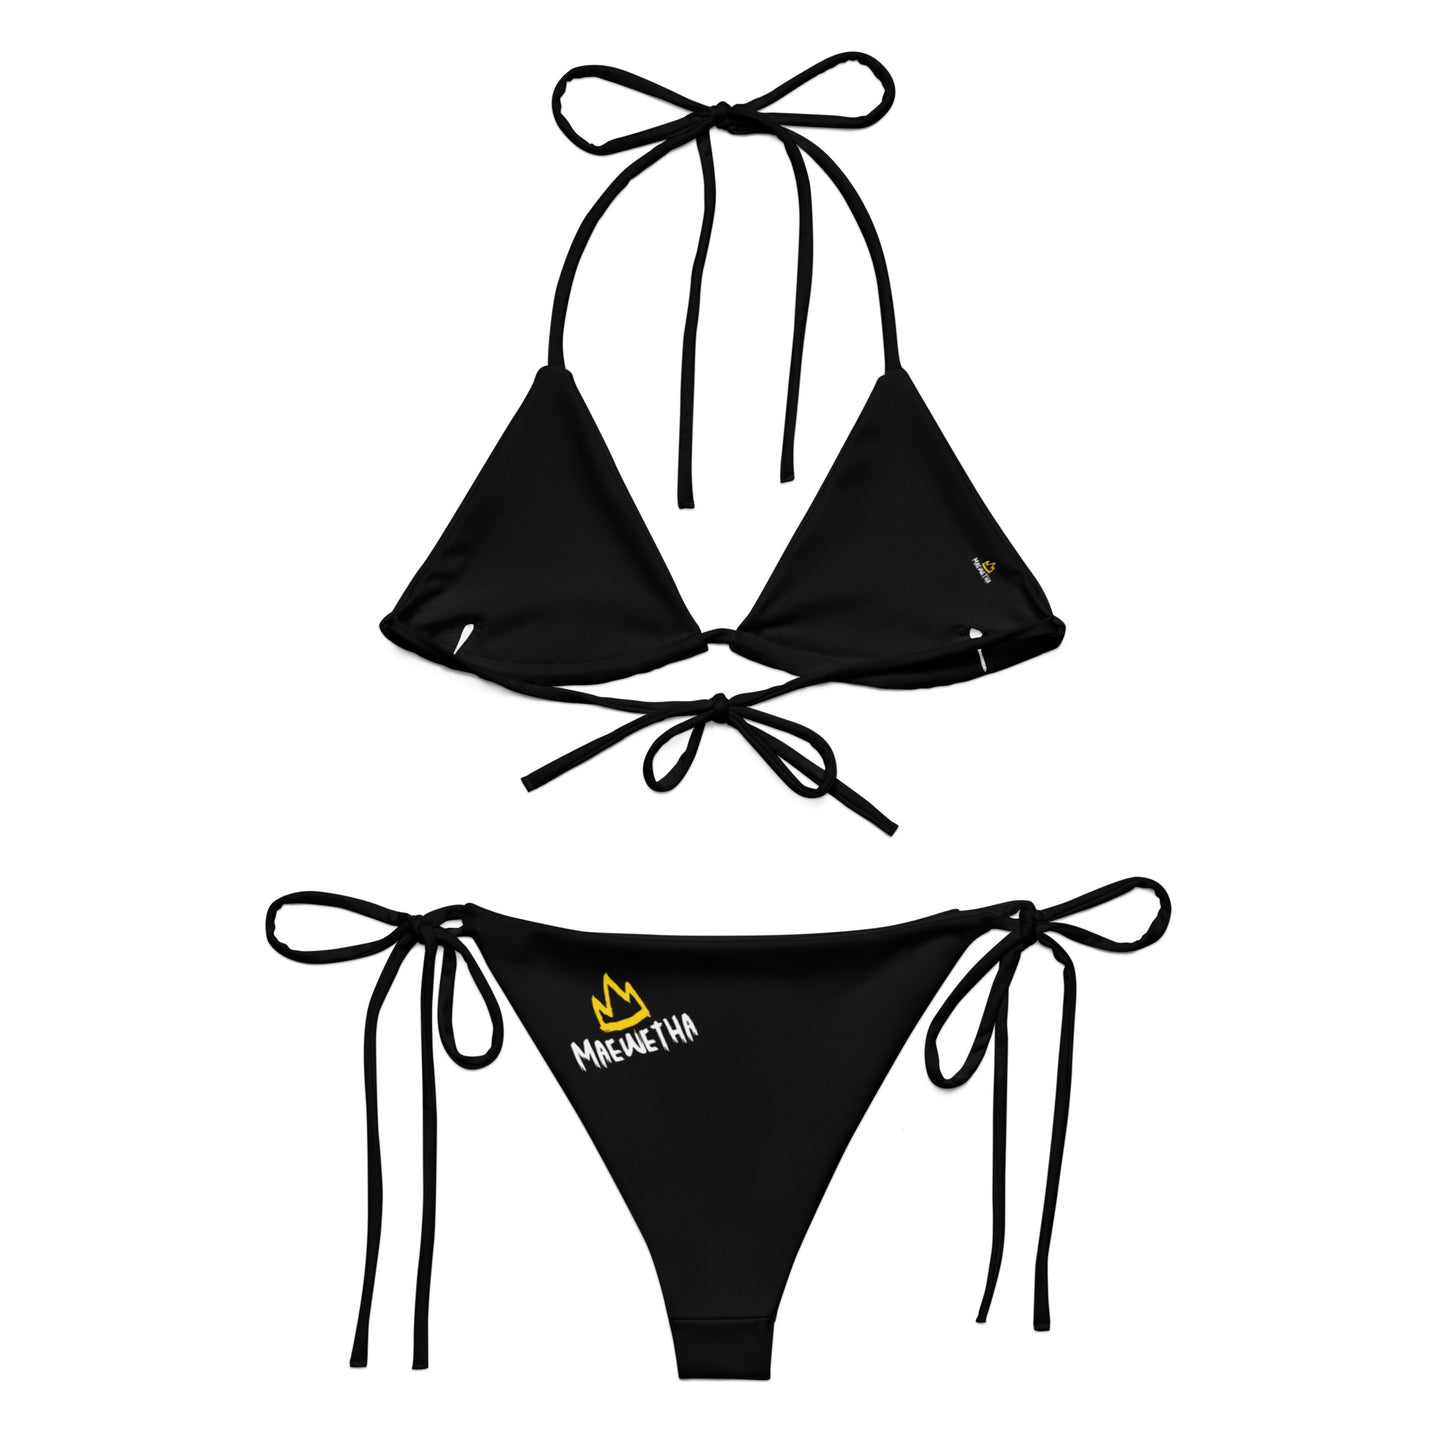 Maewetha String Bikini